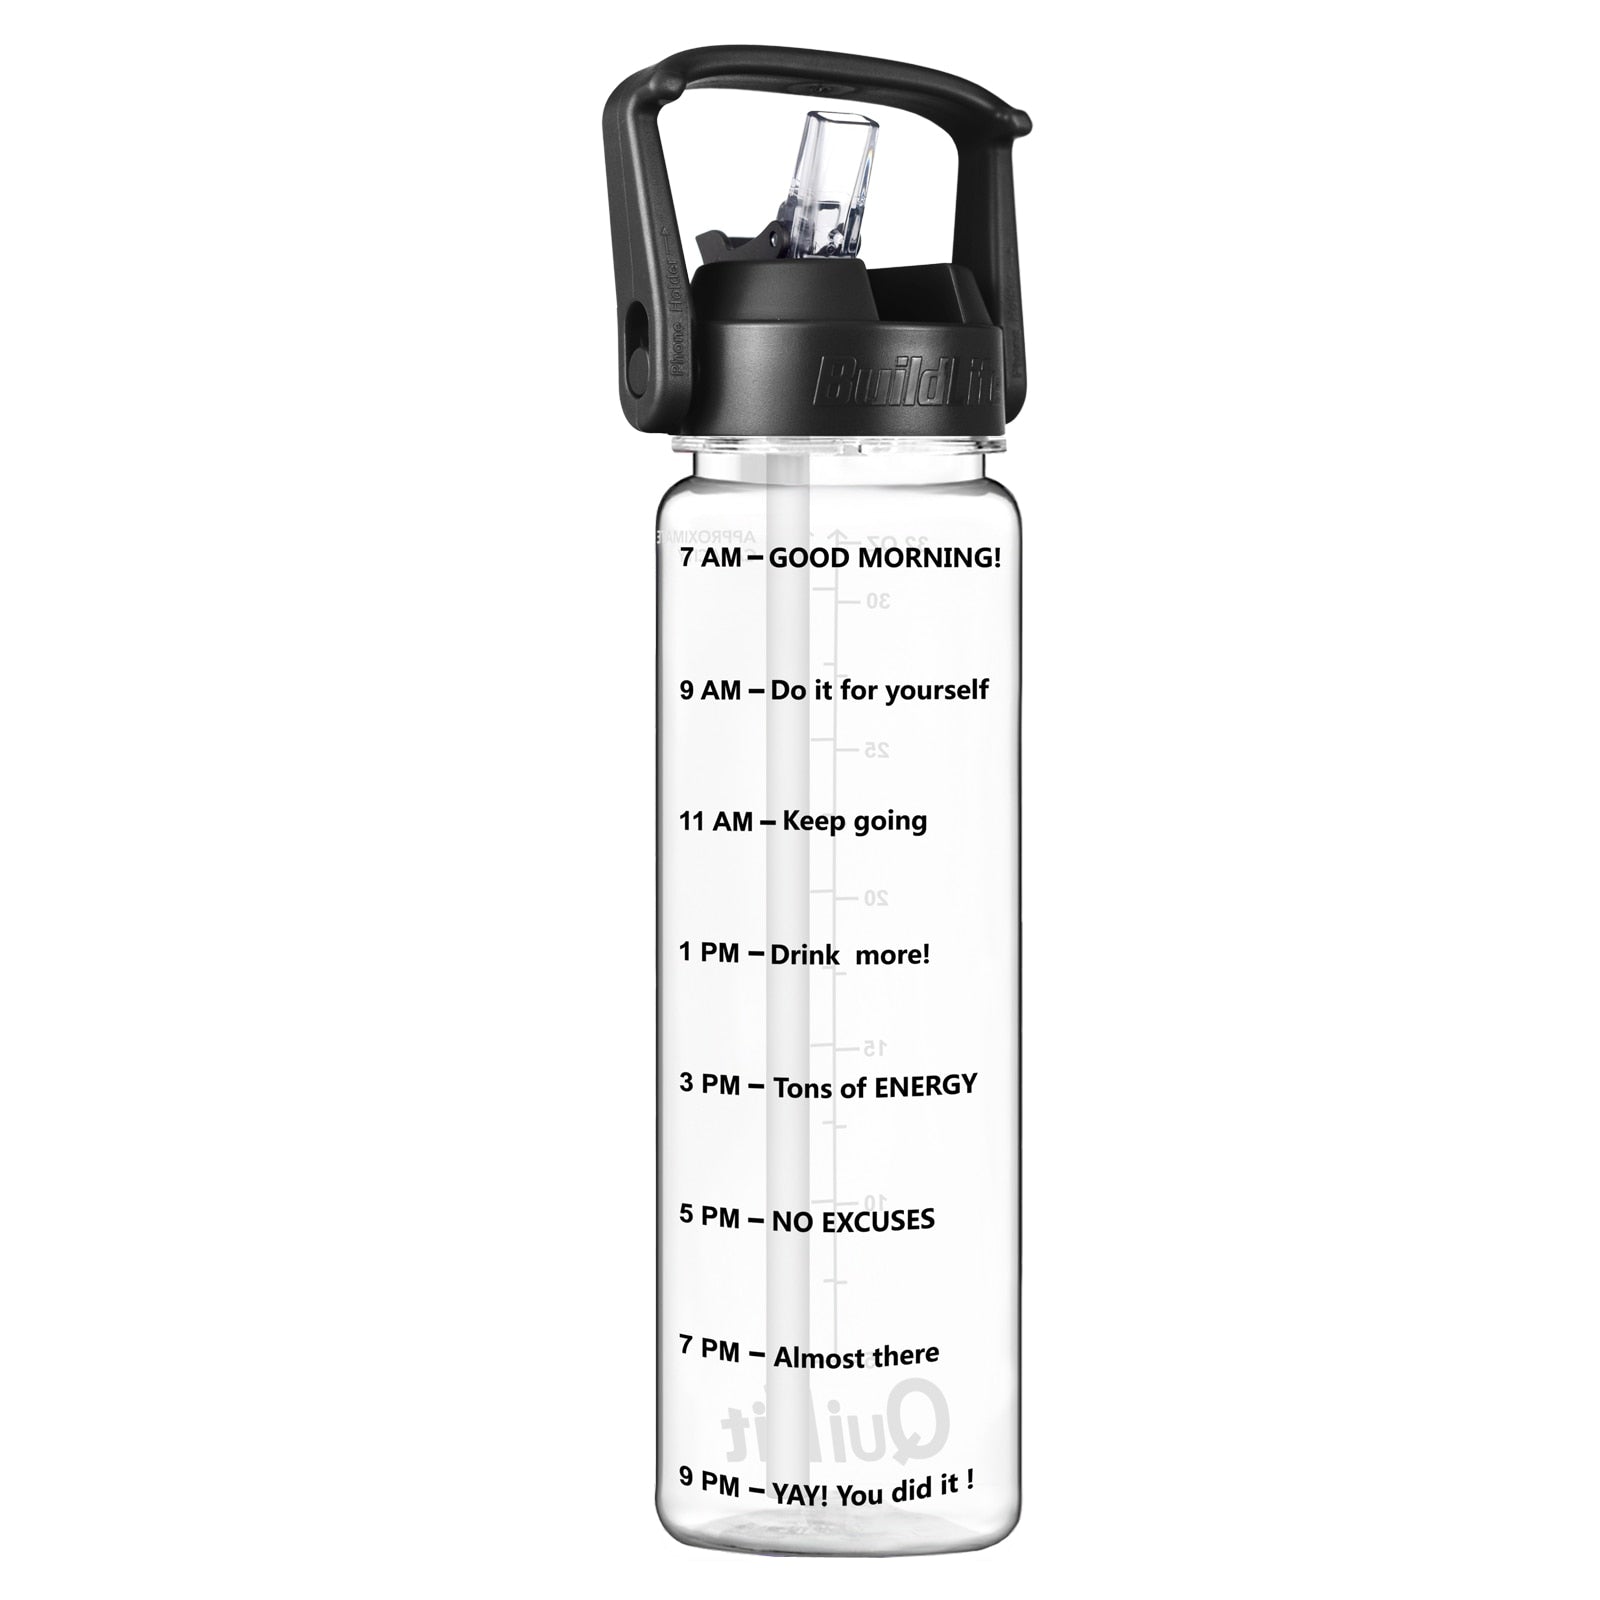 Eine transparente Sporttrinkflasche mit einem Schwarzem Deckel, ausgestattet mit einem grossen Henkel und mit Zeitmarkierungen zur Fluessigkeitsueberwachung. Unten ist das Markenlogo "QuiFit" zu sehen.